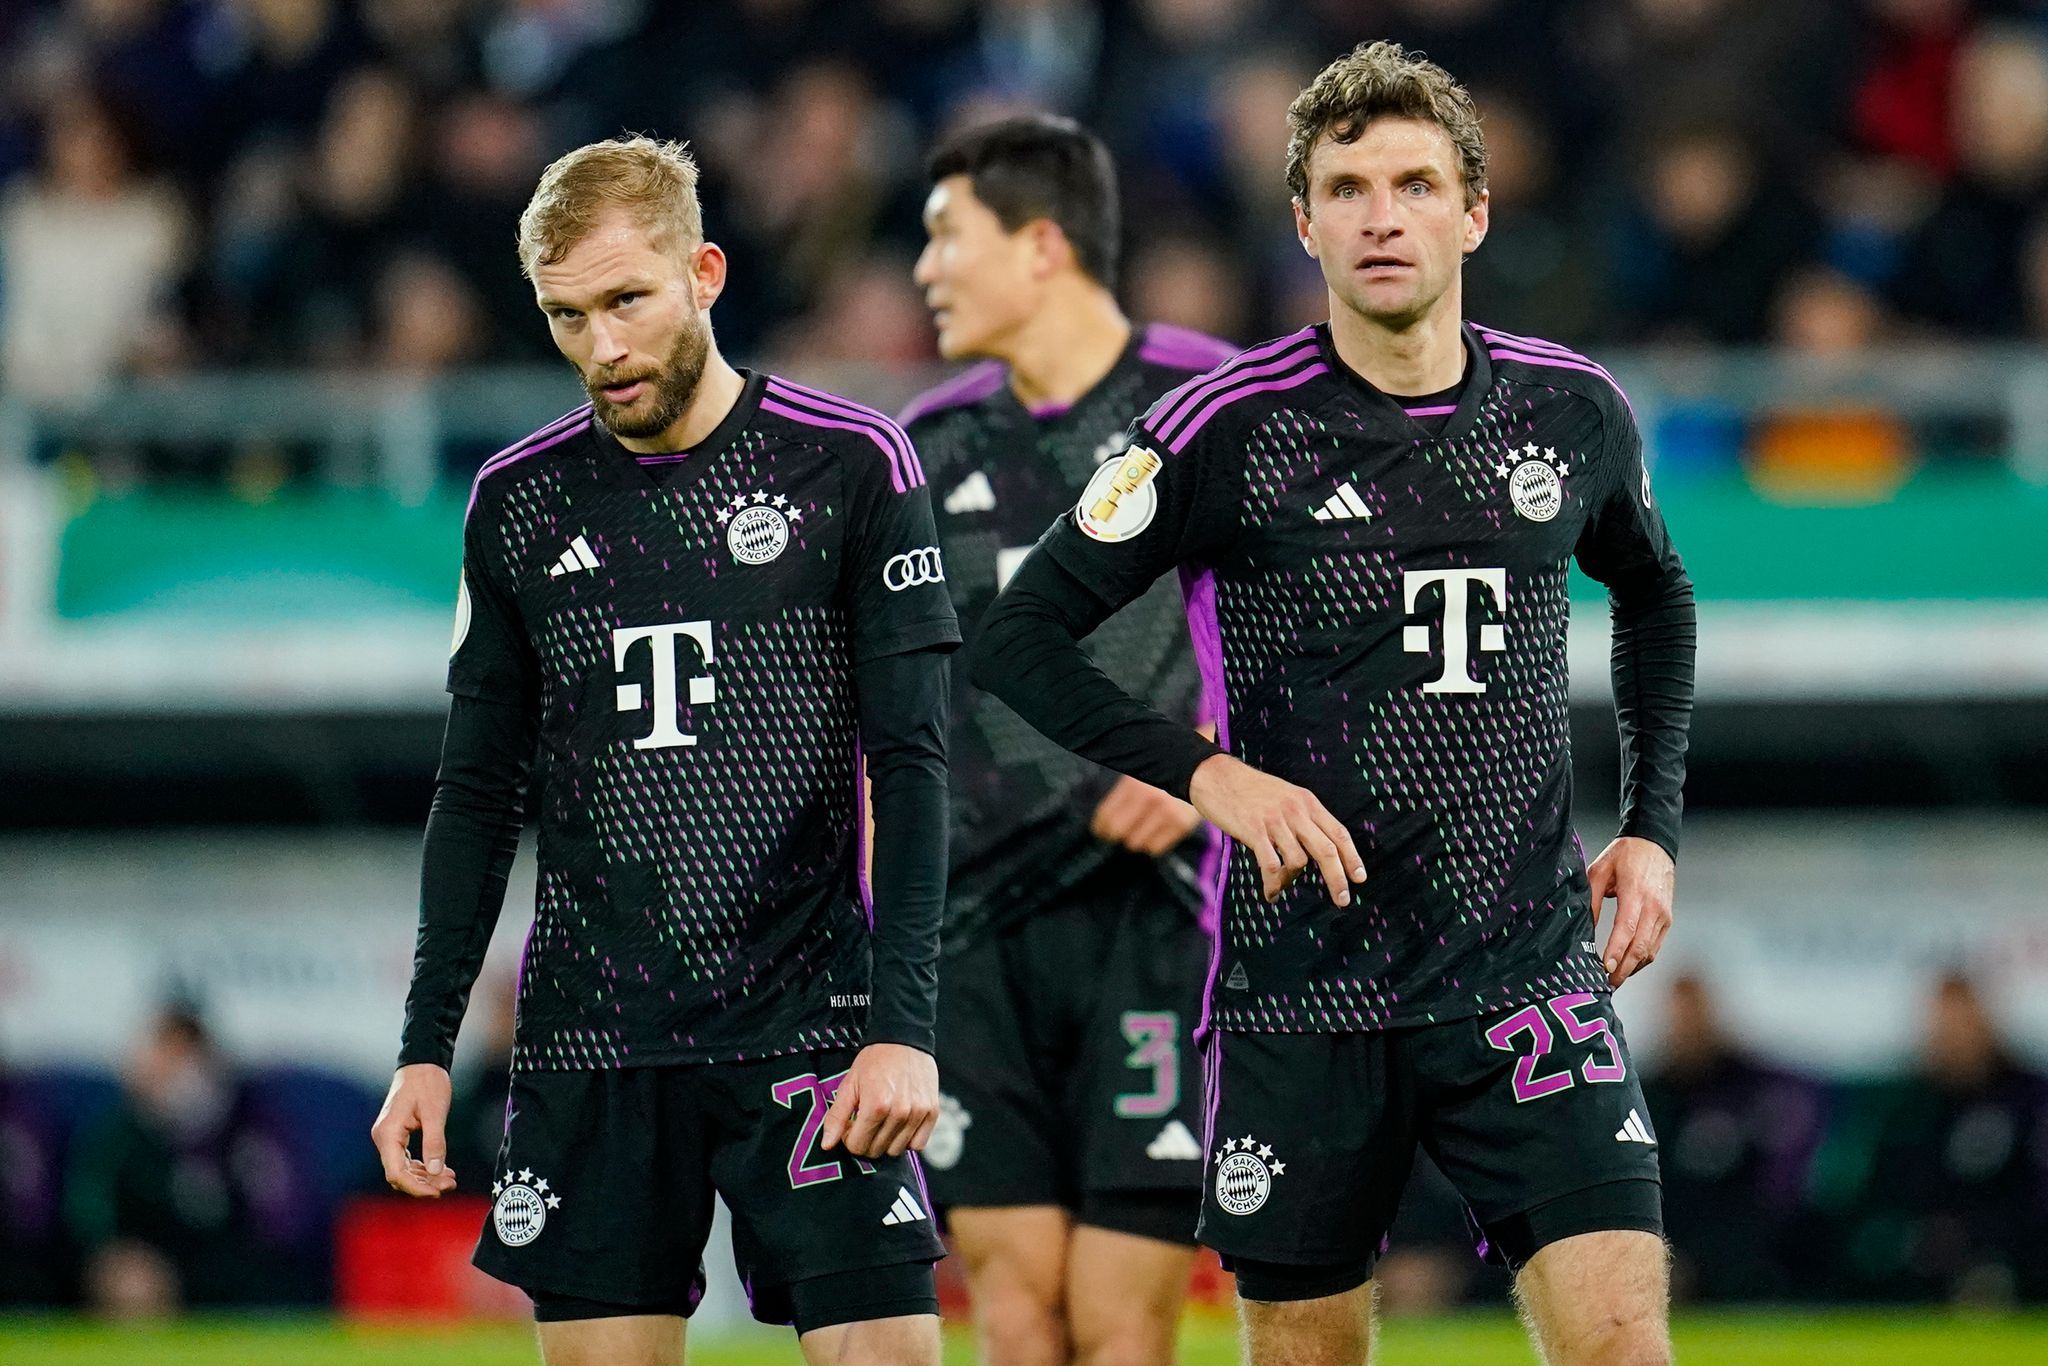 Die Bayern-Profis Konrad Laimer, Min-jae Kim und Thomas Müller (l-r) wirken nach dem Spiel fassungslos.